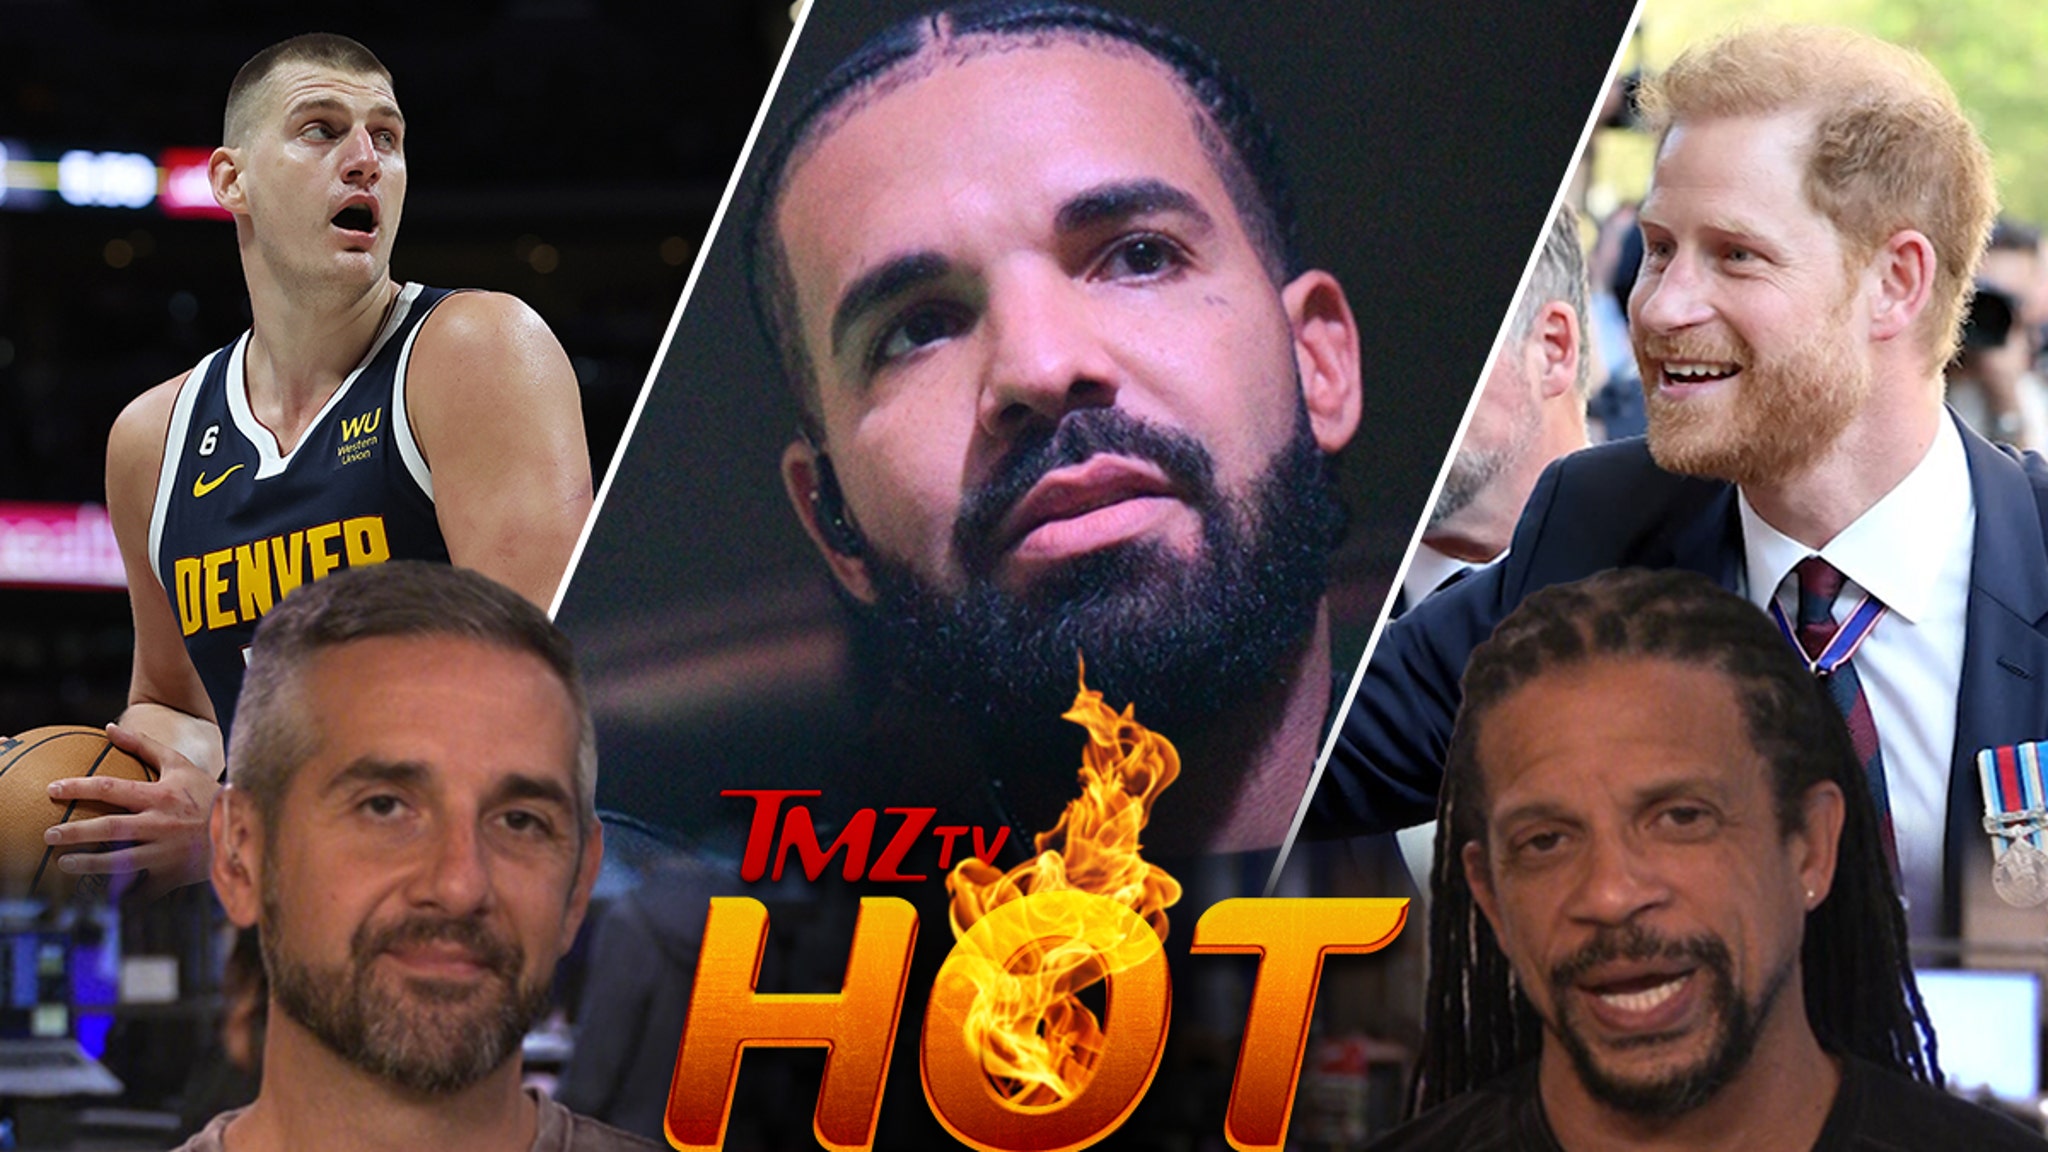 TMZ TV Hot Takes: Drake, Prince Harry, Nikola Jokic